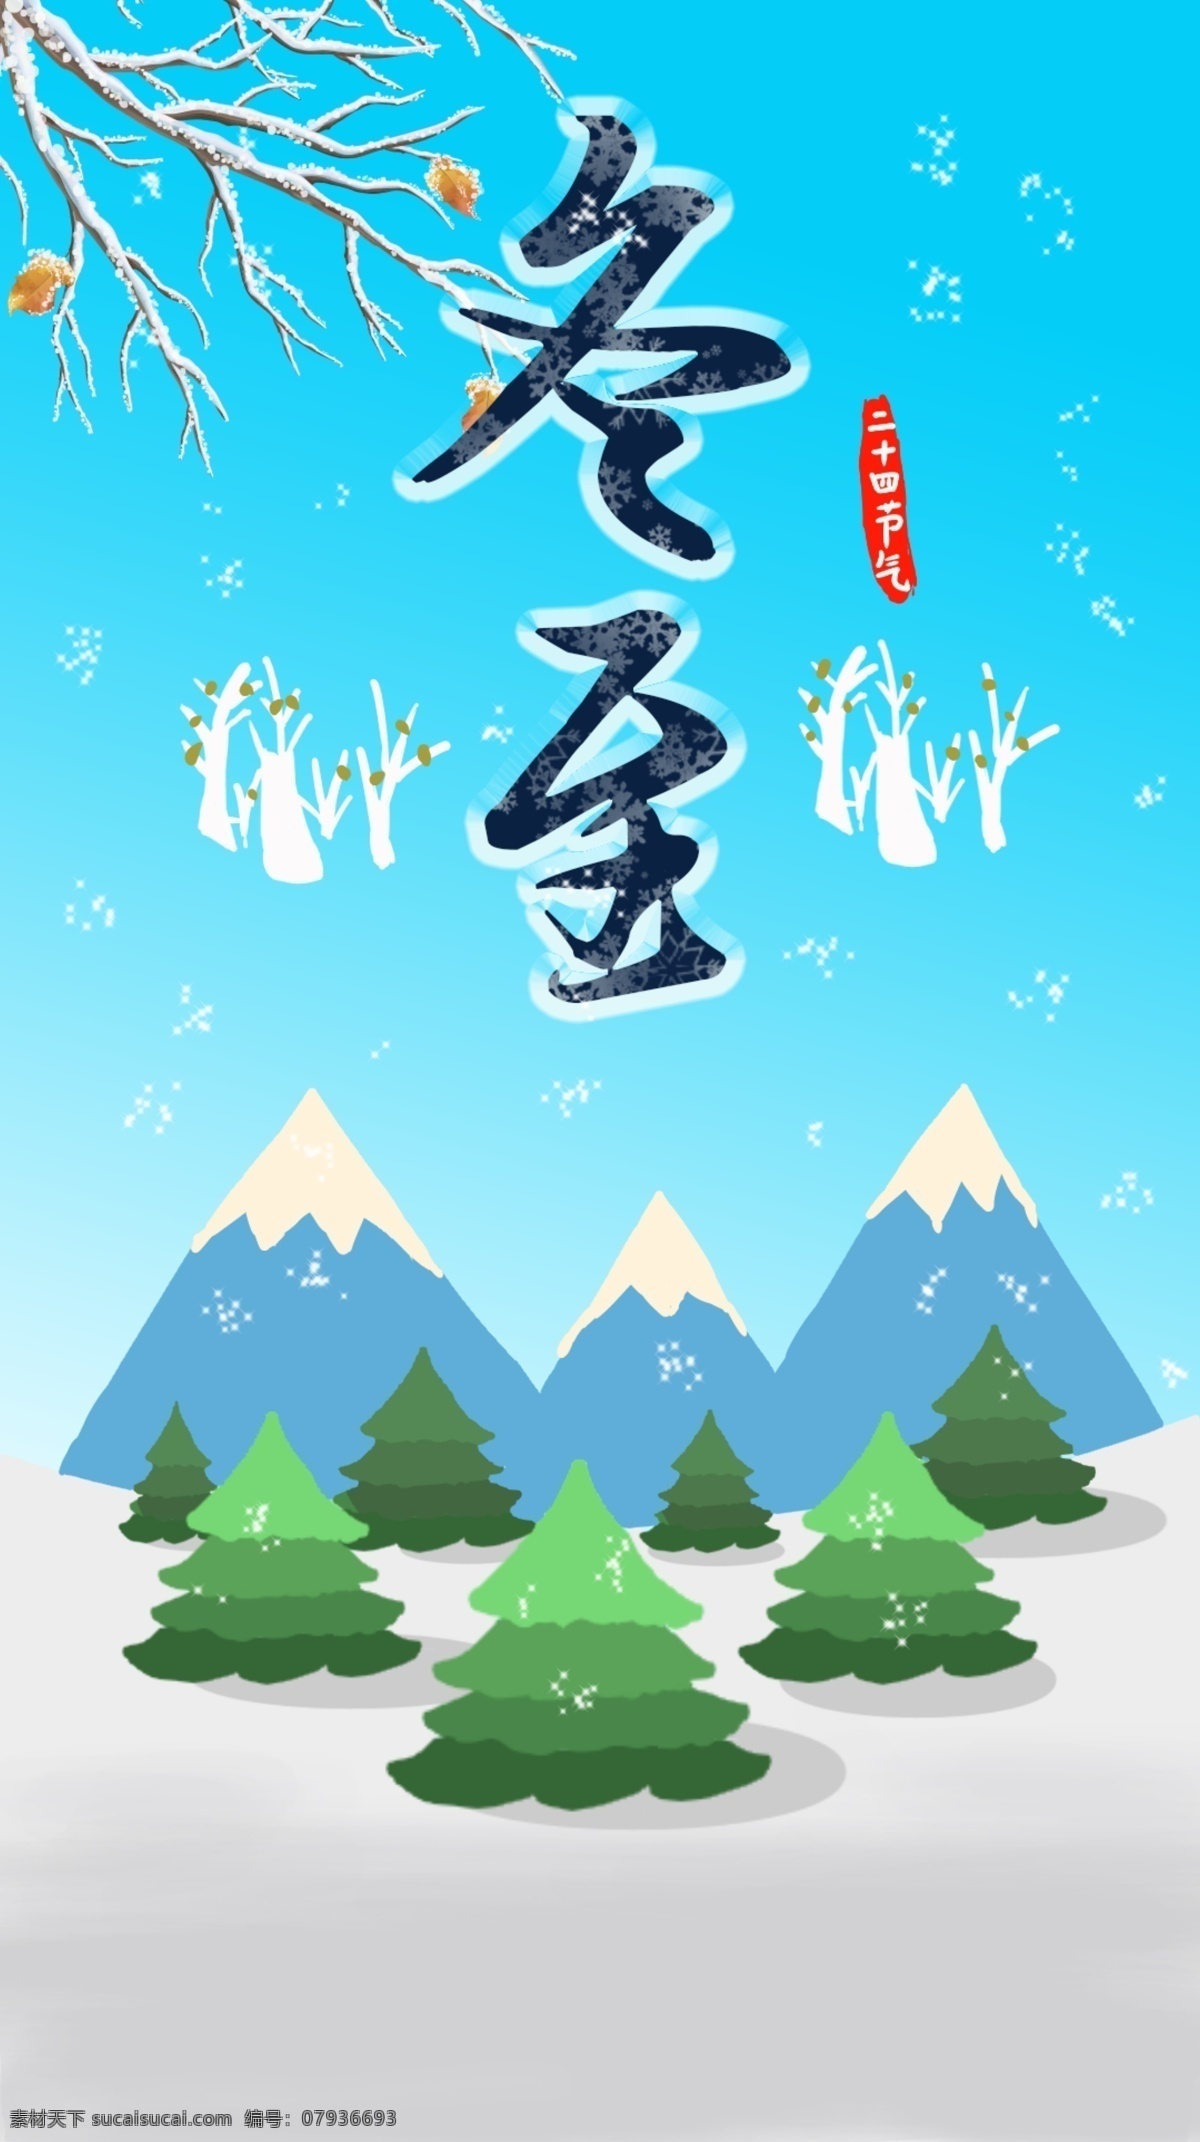 立冬 卡通 节日 海报 手绘 松树 雪人 冬日 冬天 下雪